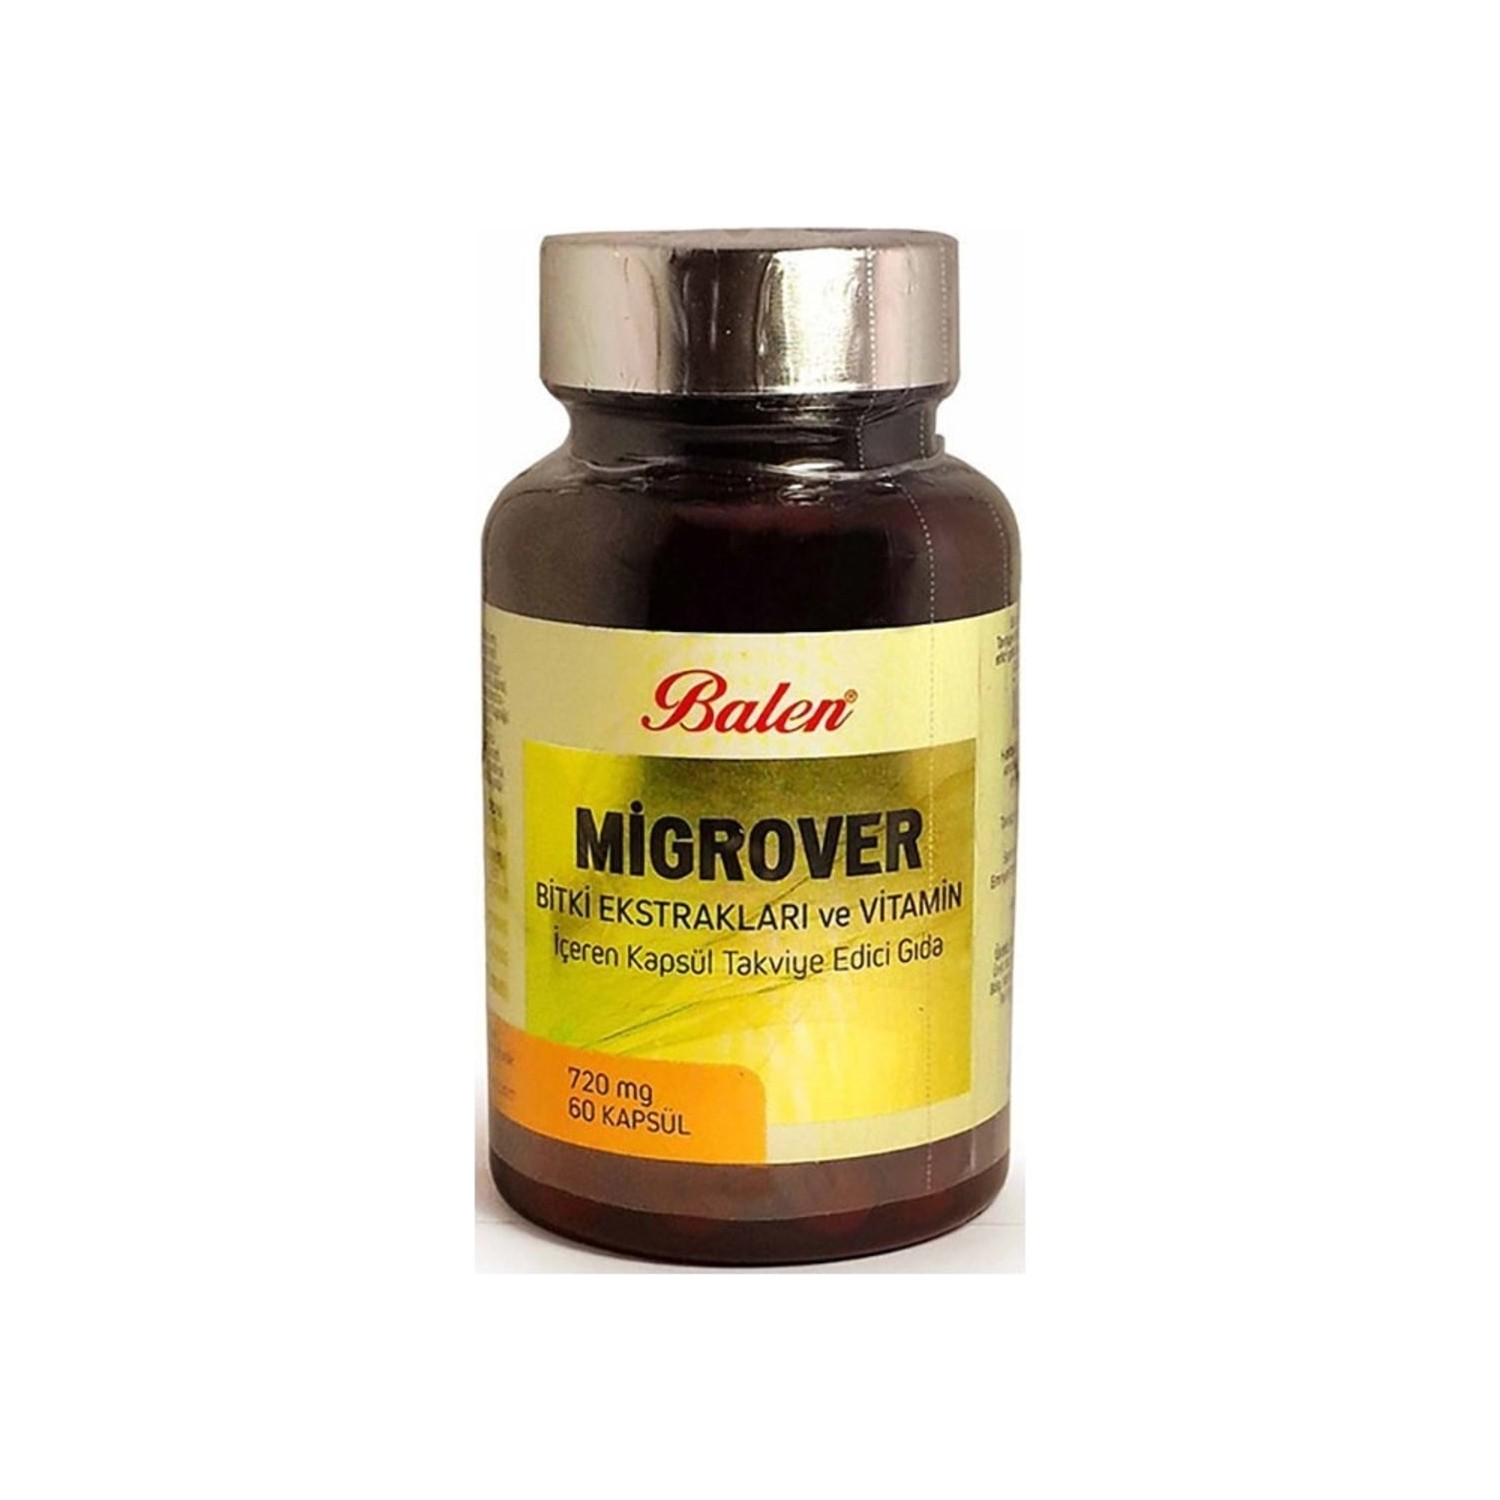 Капсулы Balen Migrover, содержащие растительные экстракты и витамины, 60 капсул, 720 мг body builder cla plant based 60 softgels 2000 mg